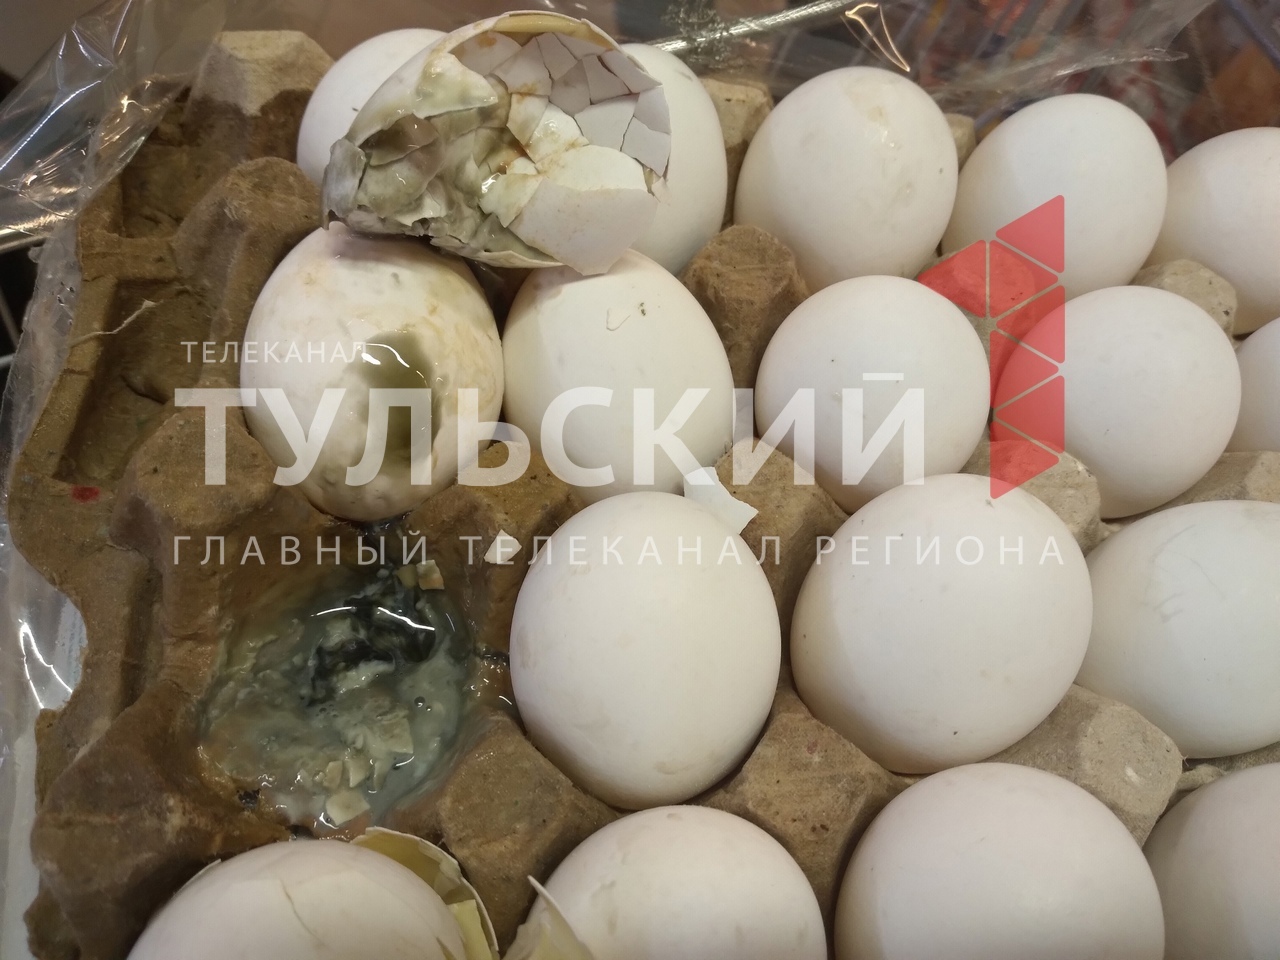 В супермаркете "Спар" в Туле нашли больше 400 тухлых яиц